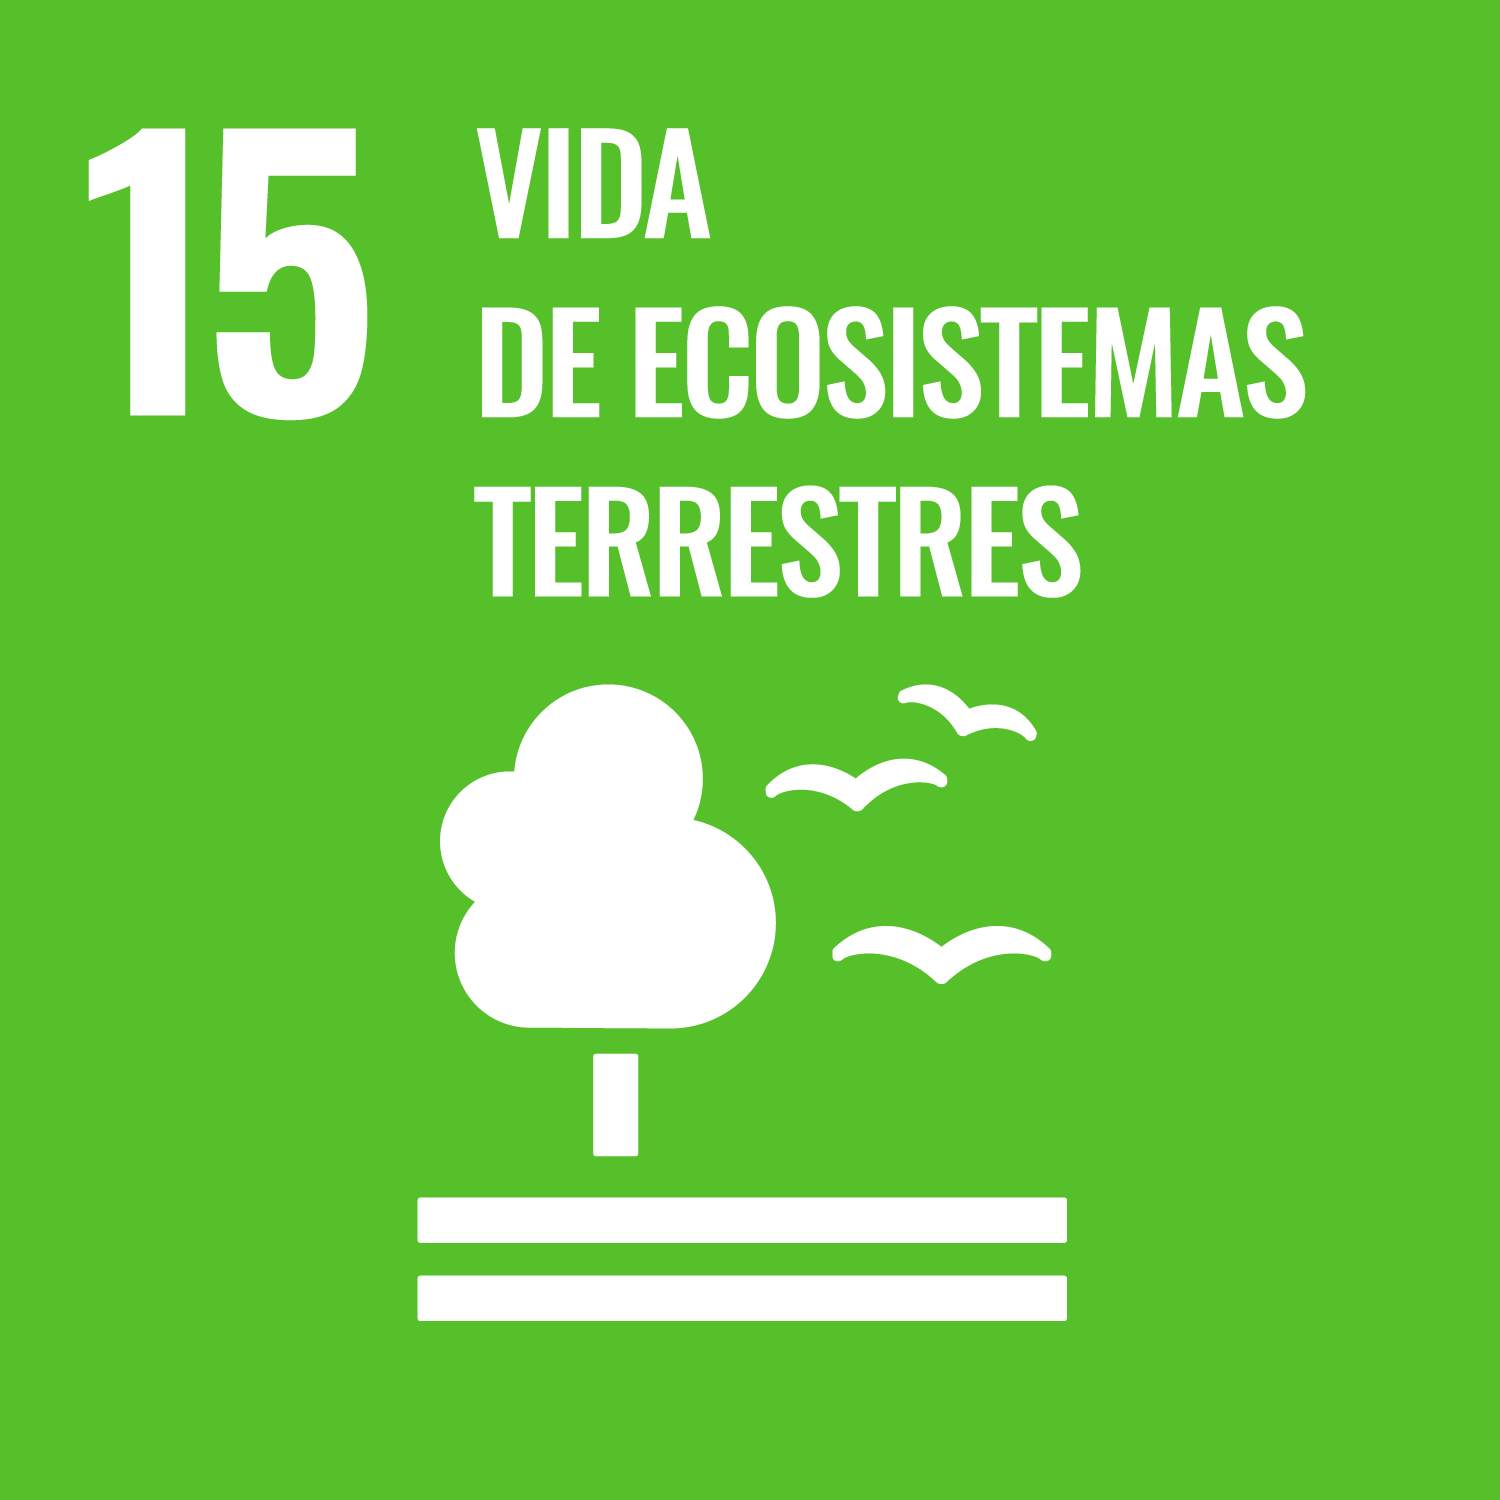 Objetivos de Desarrollo Sostenible número 15, vida de ecosistemas terrestres